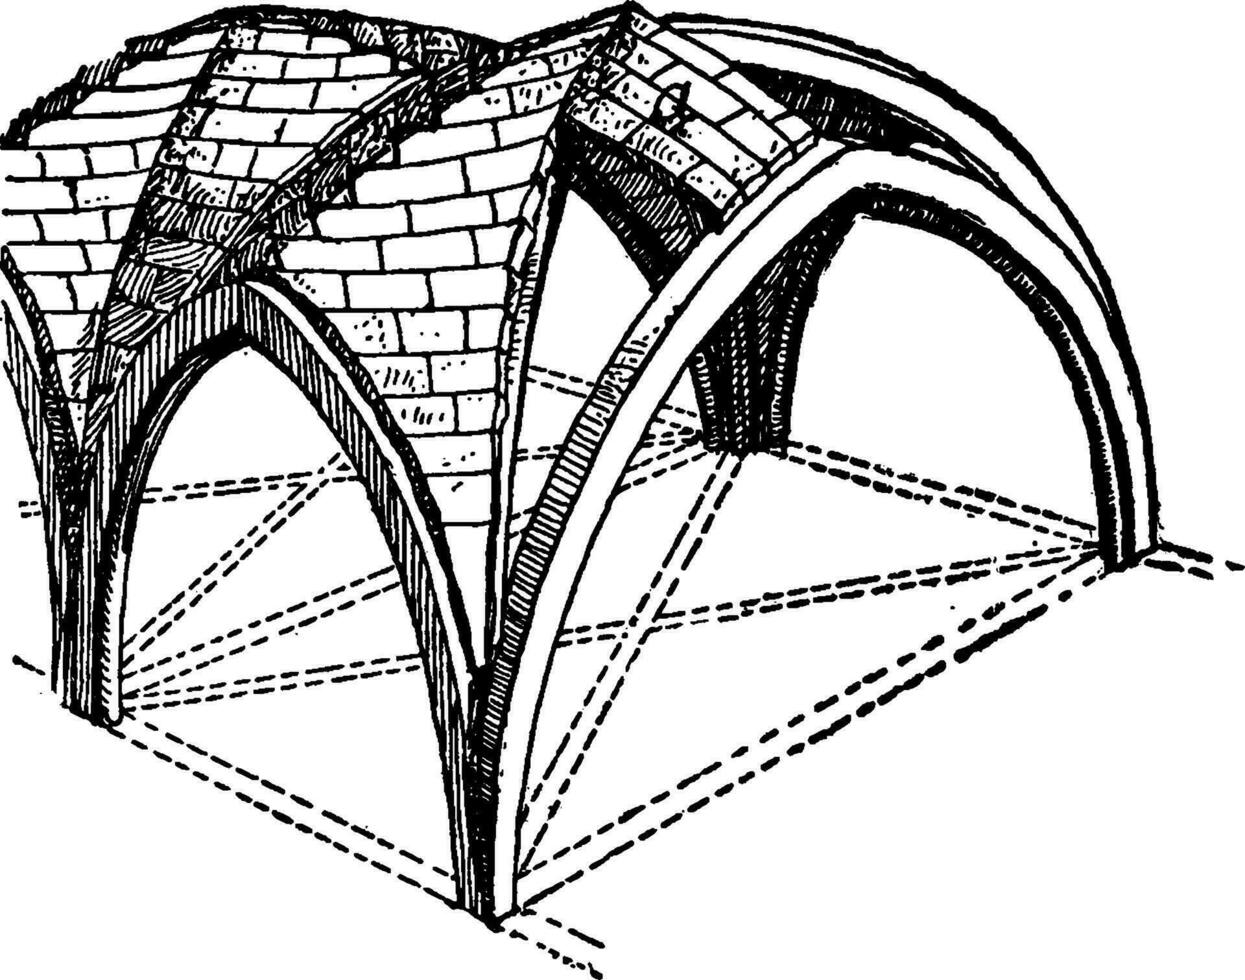 grotesk Gewölbe mit Zickzack- Firstverbindungen, wie ein doppelt Fass Gewölbe, Jahrgang Gravur. vektor